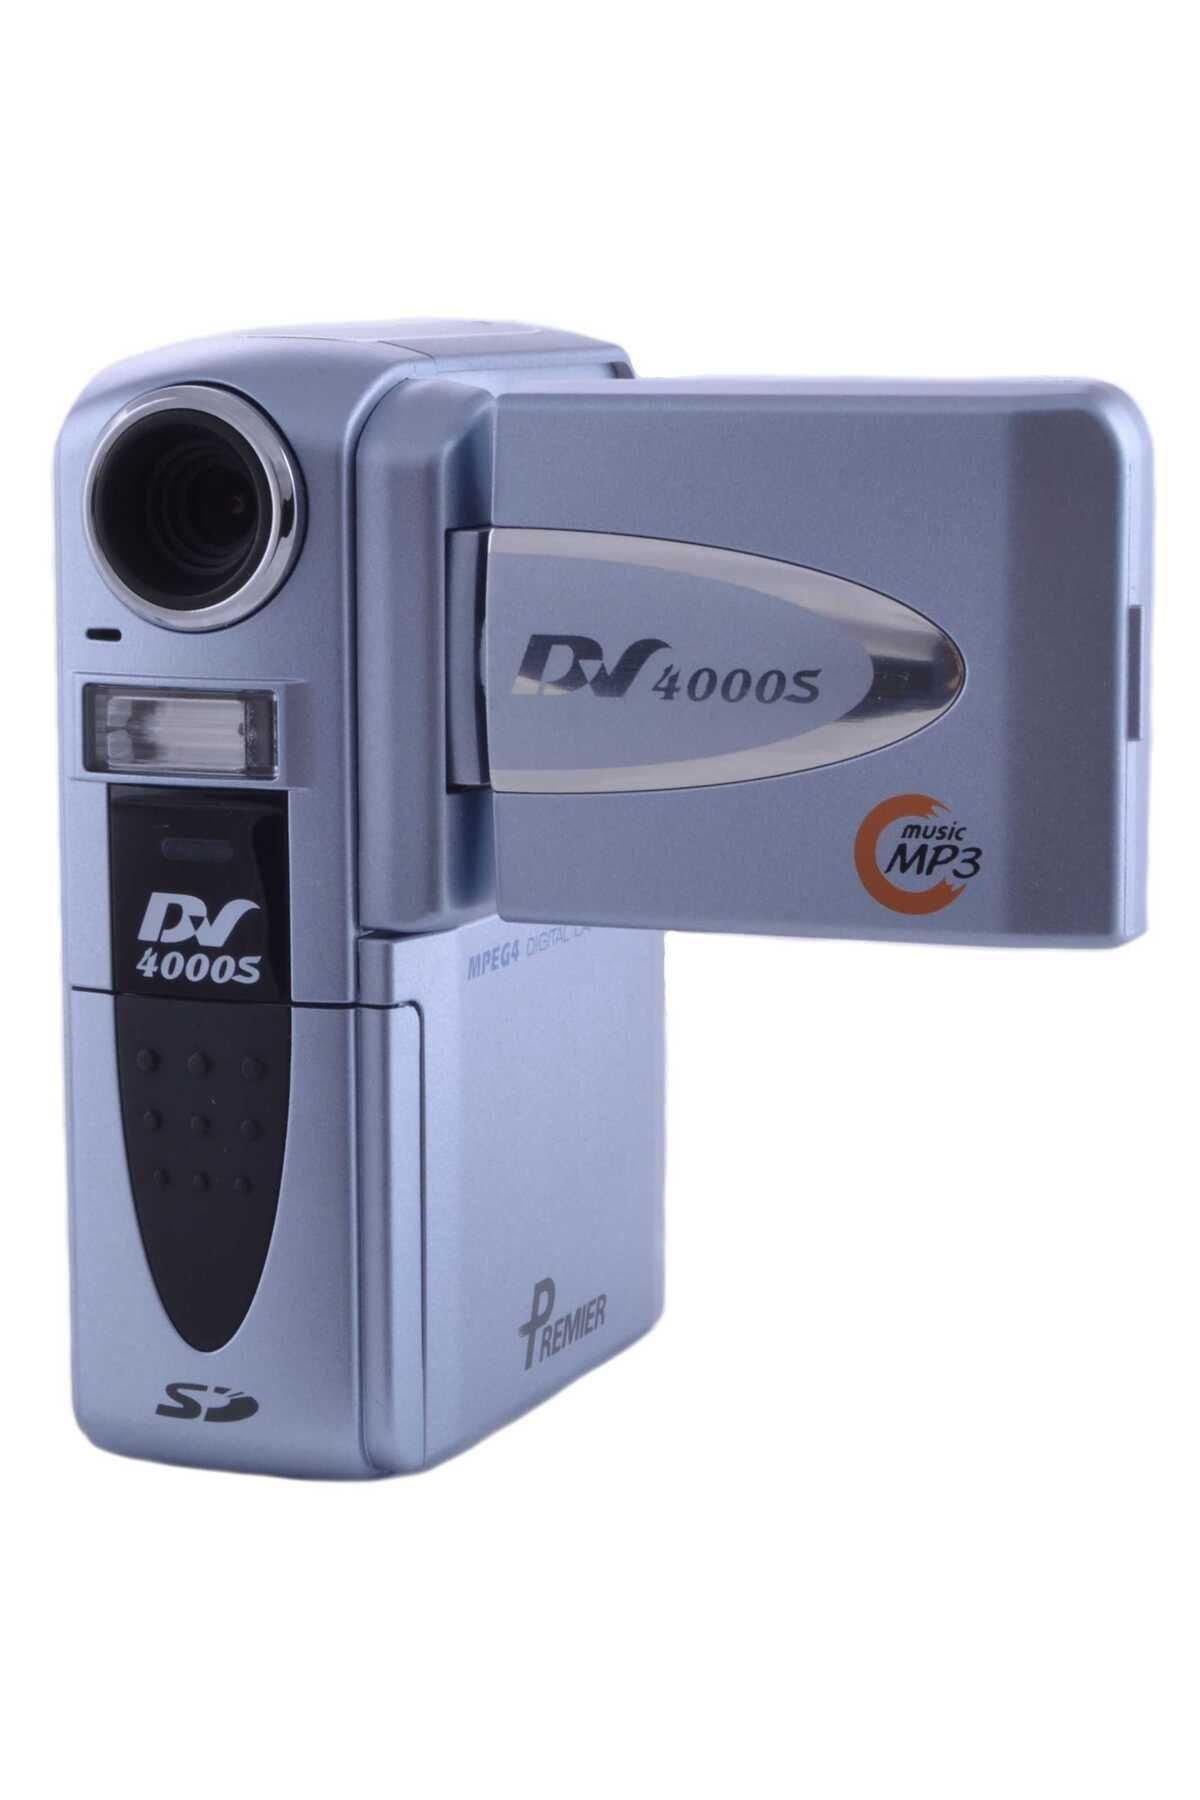 PREMIER Dv-4000s Dijital Fotoğraf Ve Video Kamera